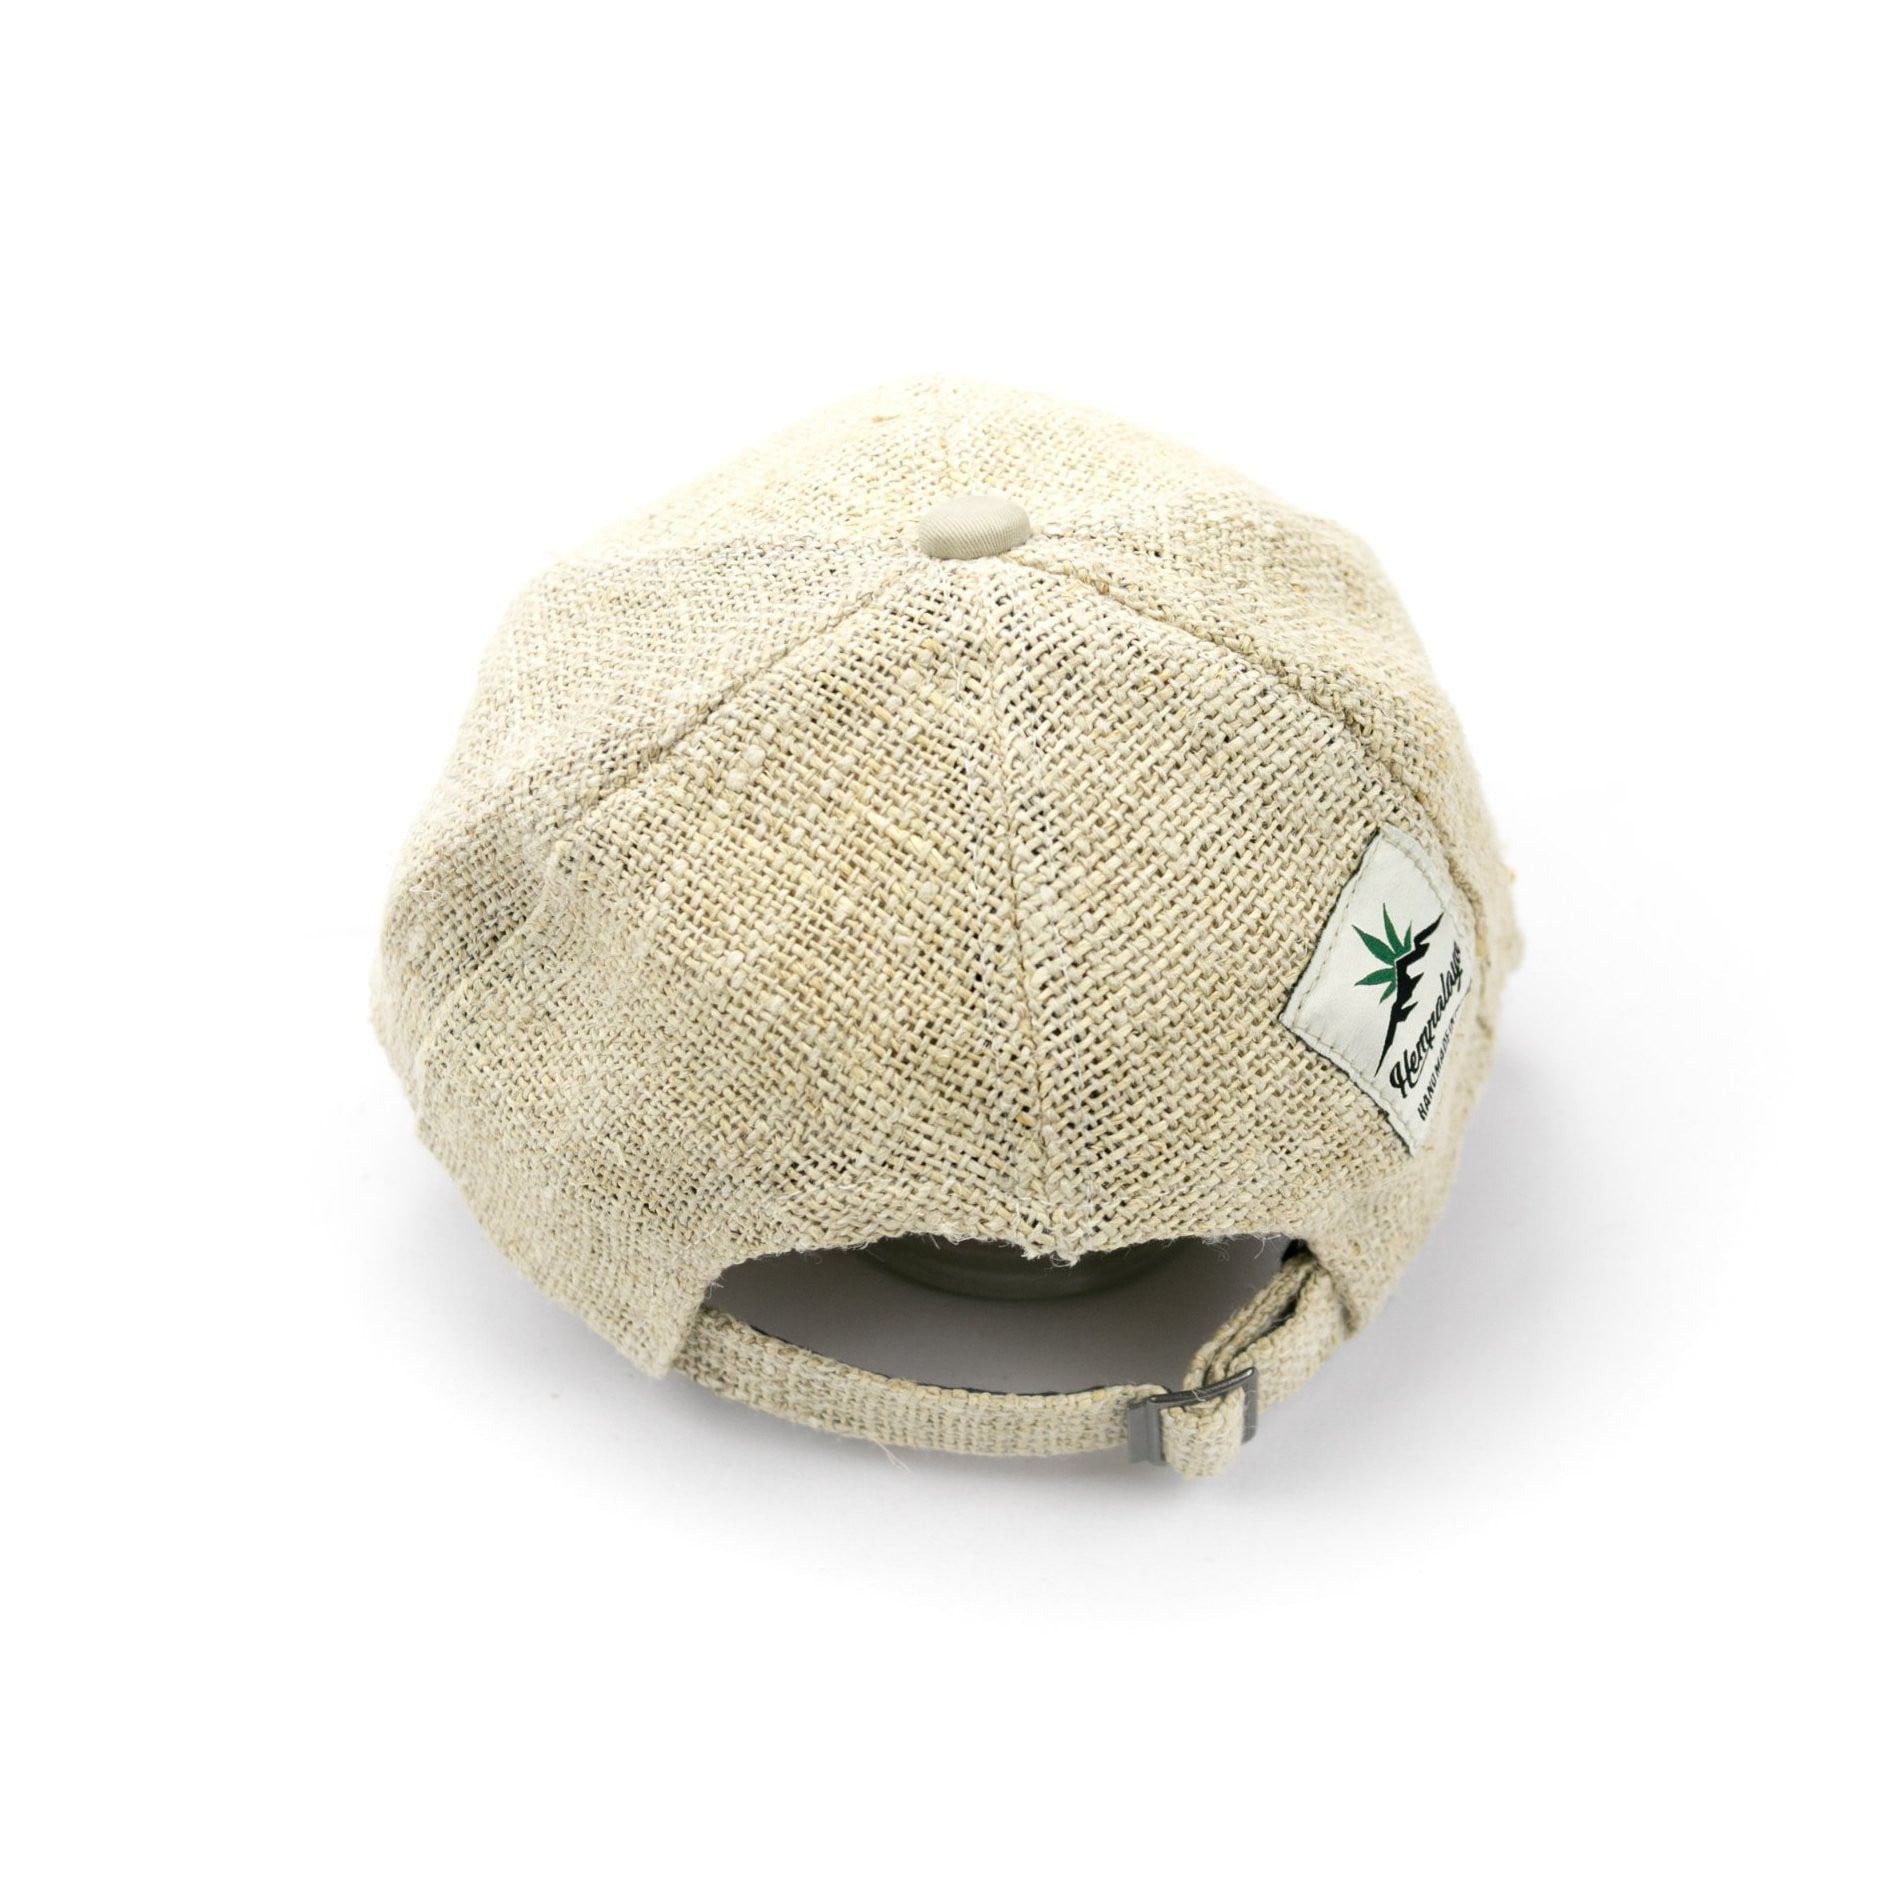 Hemp baseball cap - Hempalaya